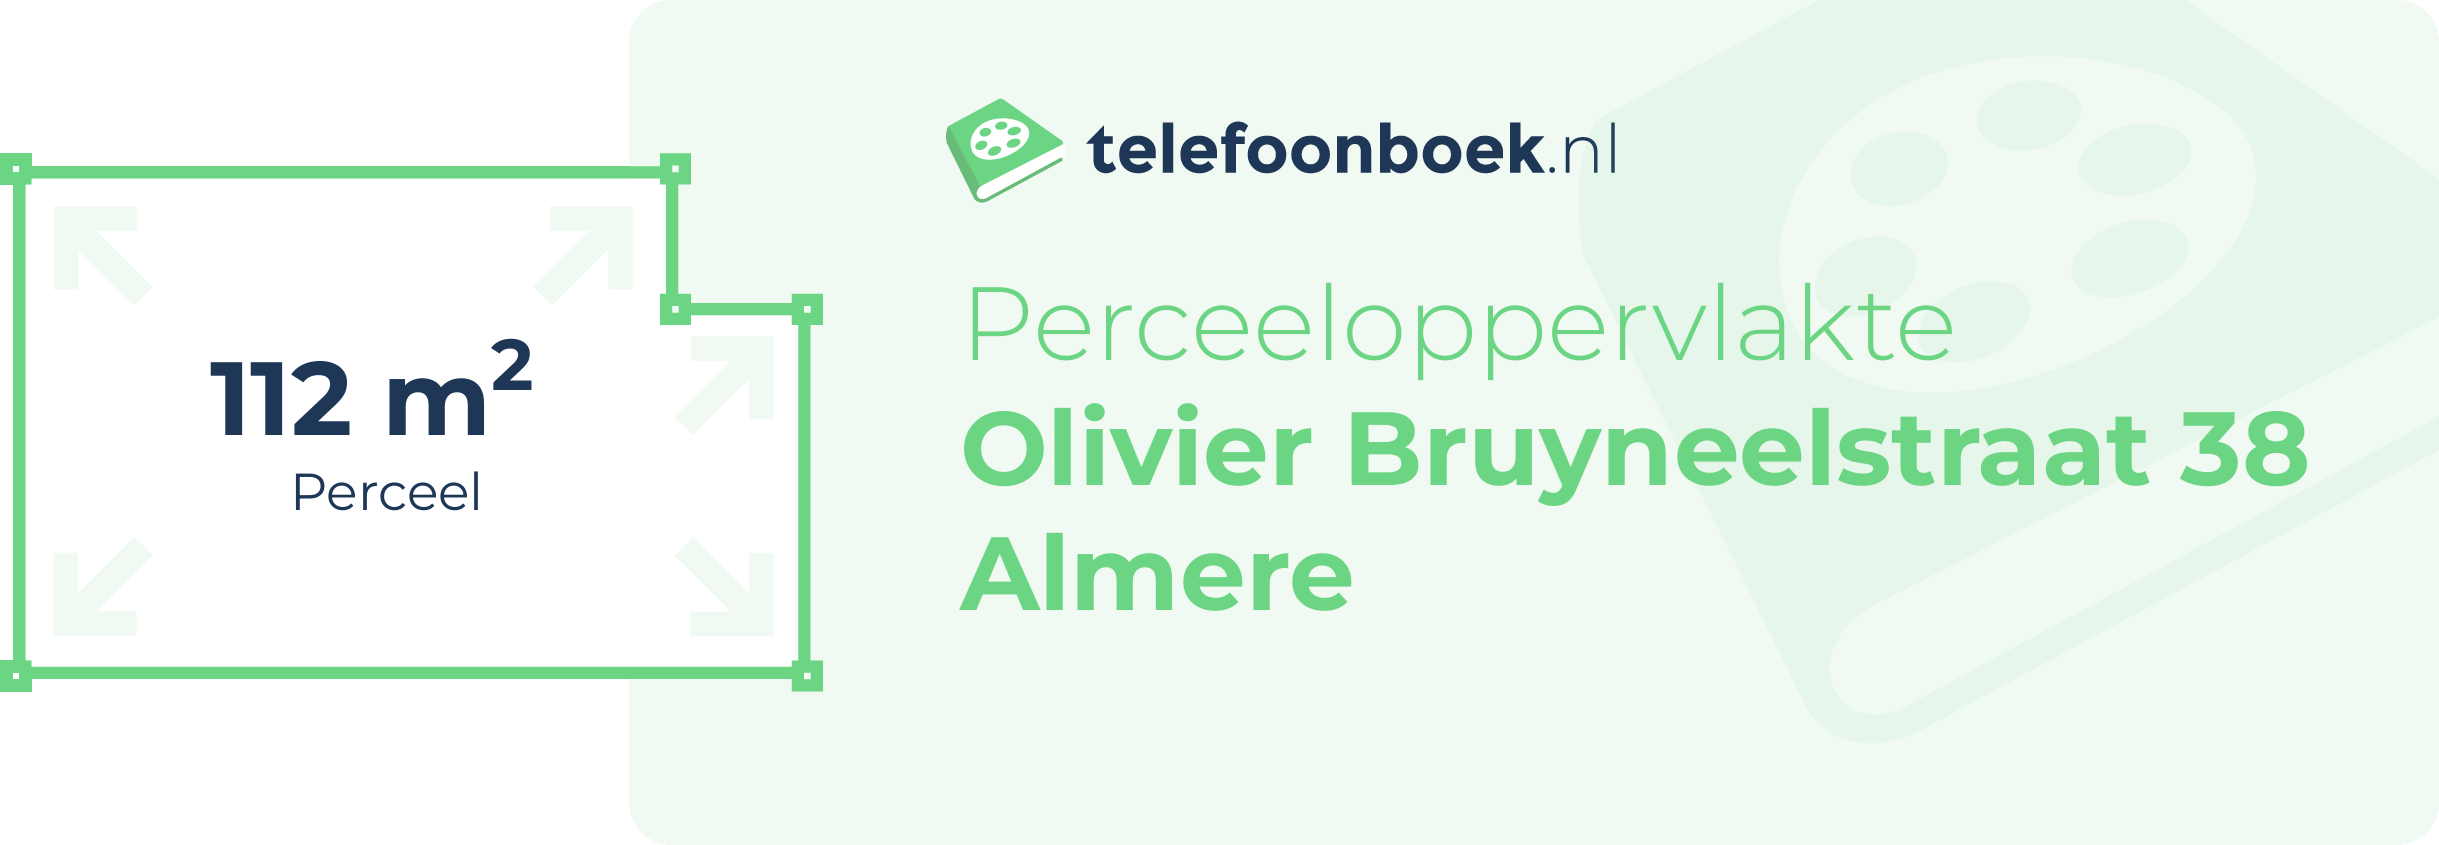 Perceeloppervlakte Olivier Bruyneelstraat 38 Almere